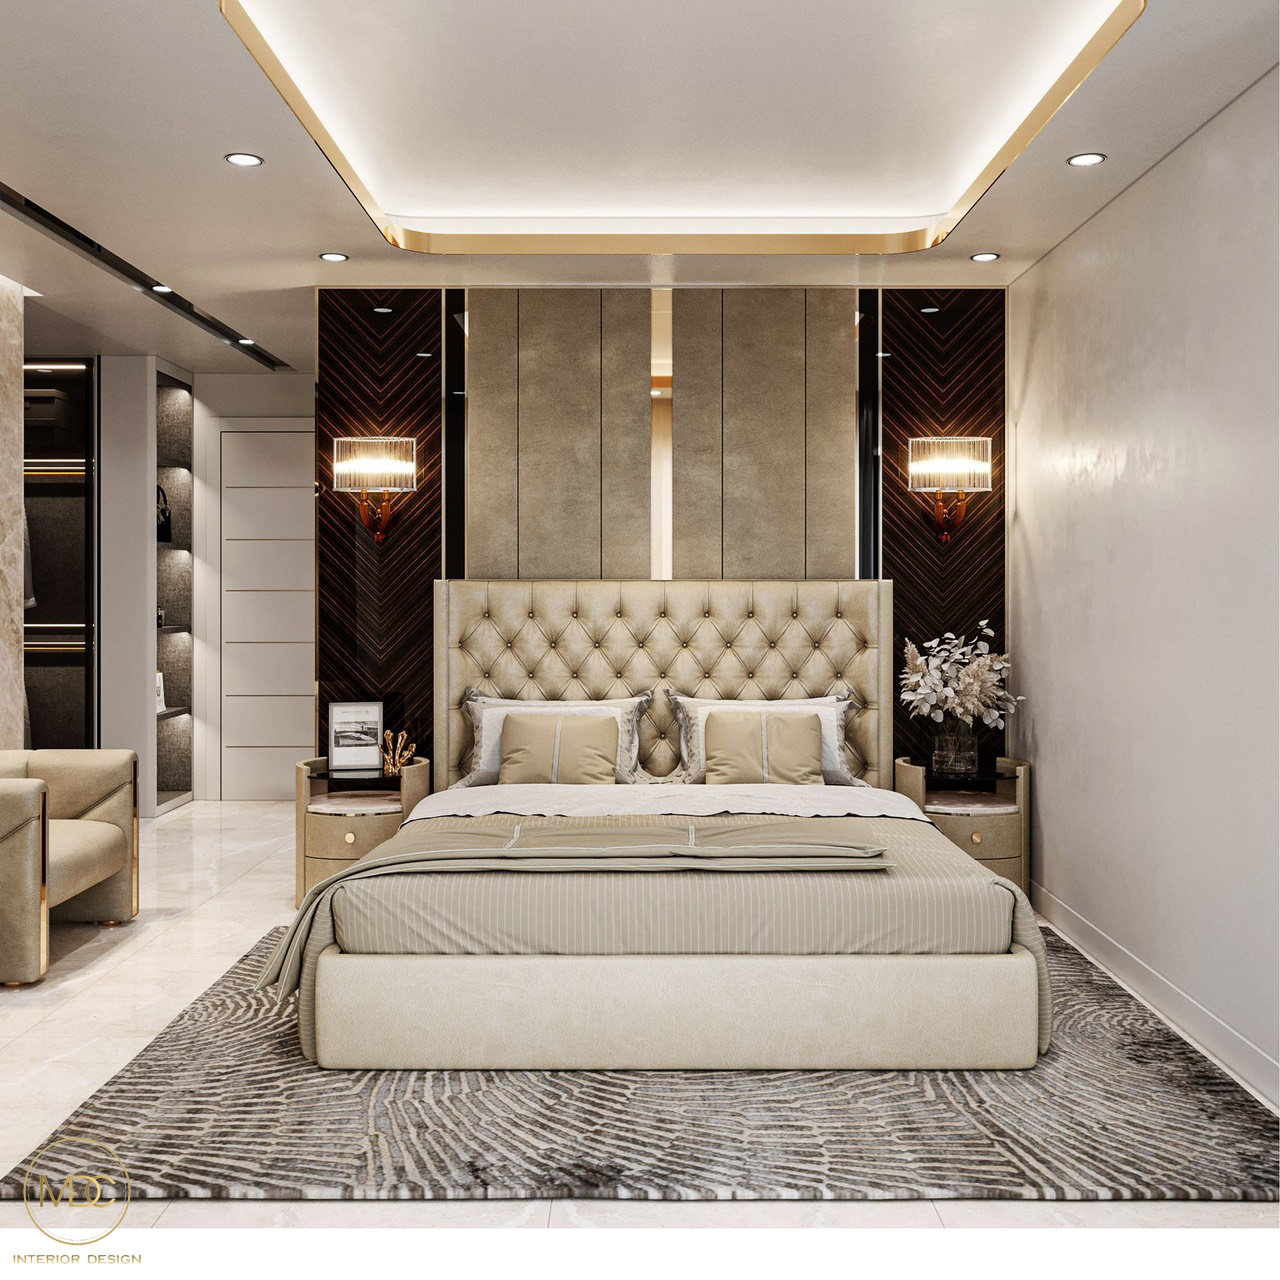 Thiết kế không gian phòng ngủ không quá cầu kỳ, nhưng vẫn đảm bảo được đầy đủ công năng sử dụng.